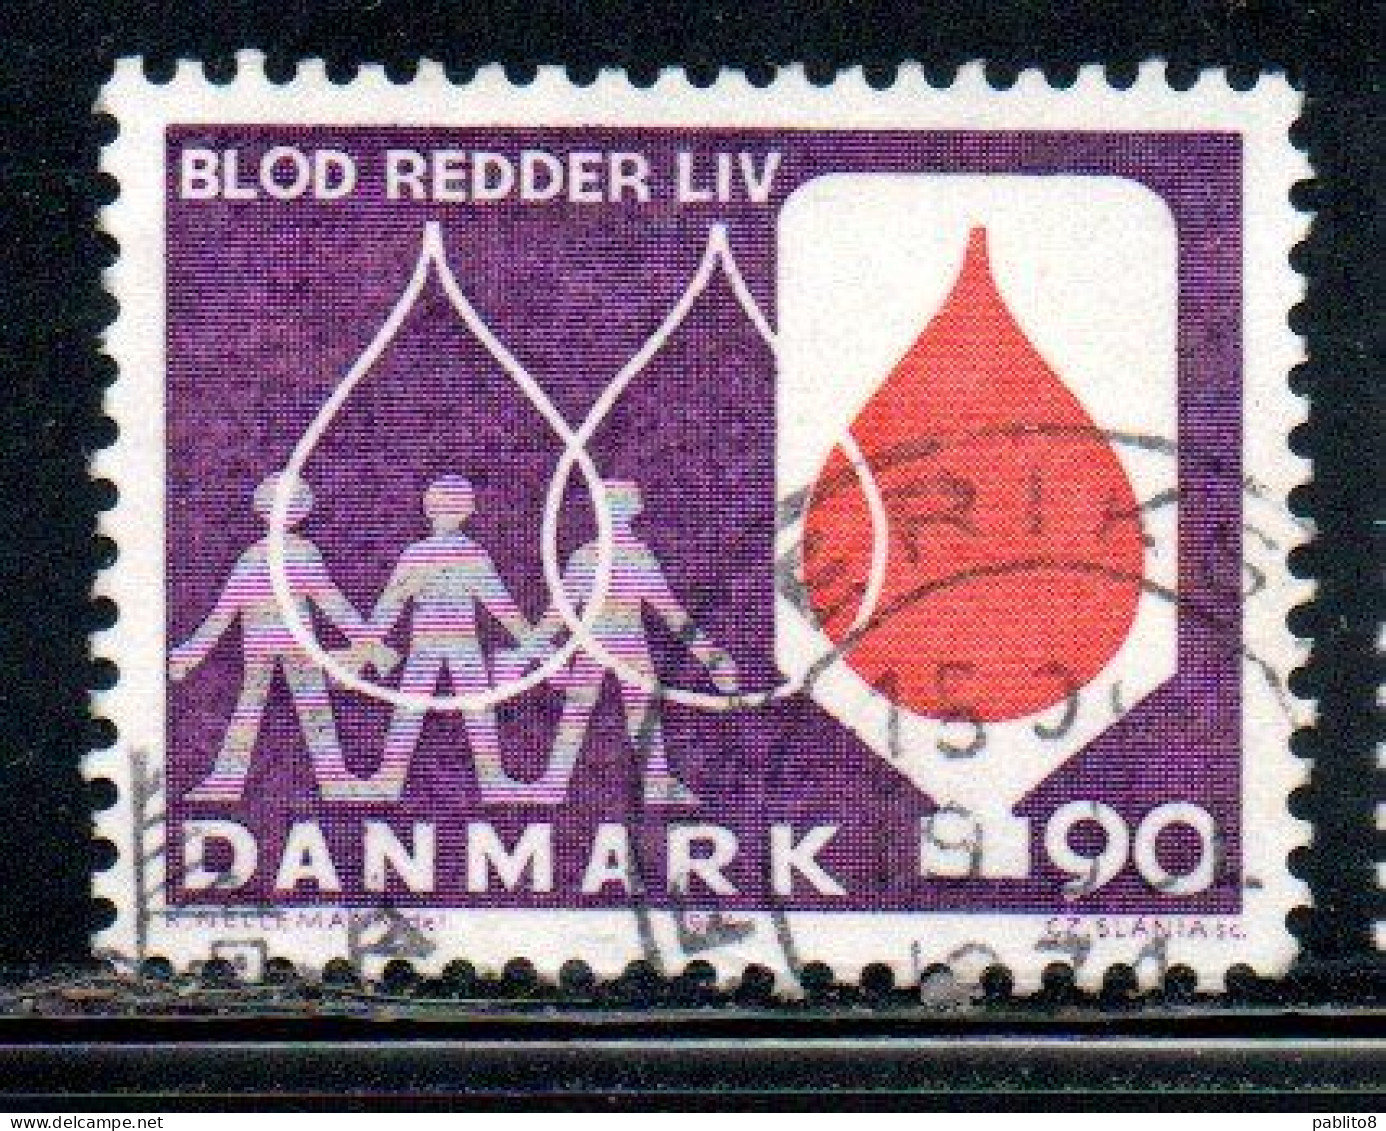 DANEMARK DANMARK DENMARK DANIMARCA 1974 BLOOD SAVES LIVES DONERS 90o USED USATO OBLITERE' - Usado